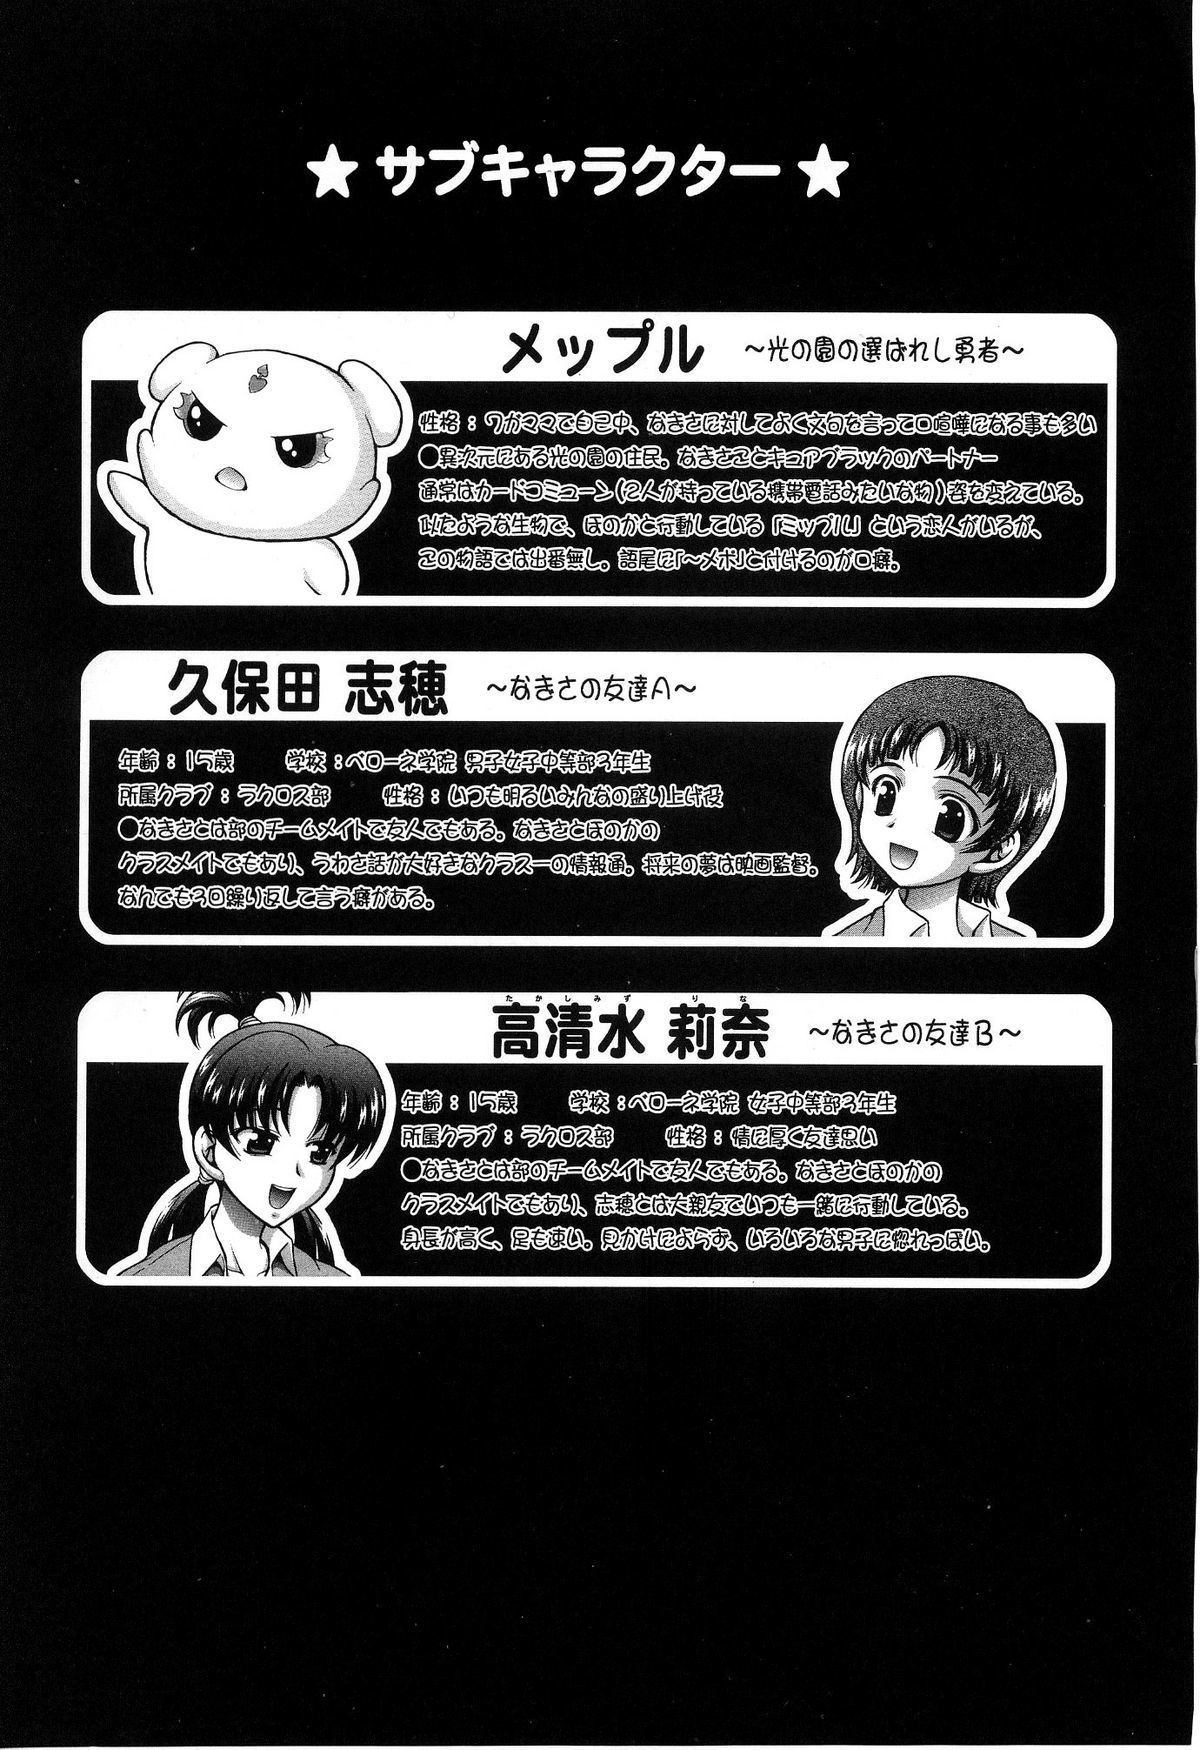 Milk Hunters 5 futari wa pretty cure 4 hentai manga